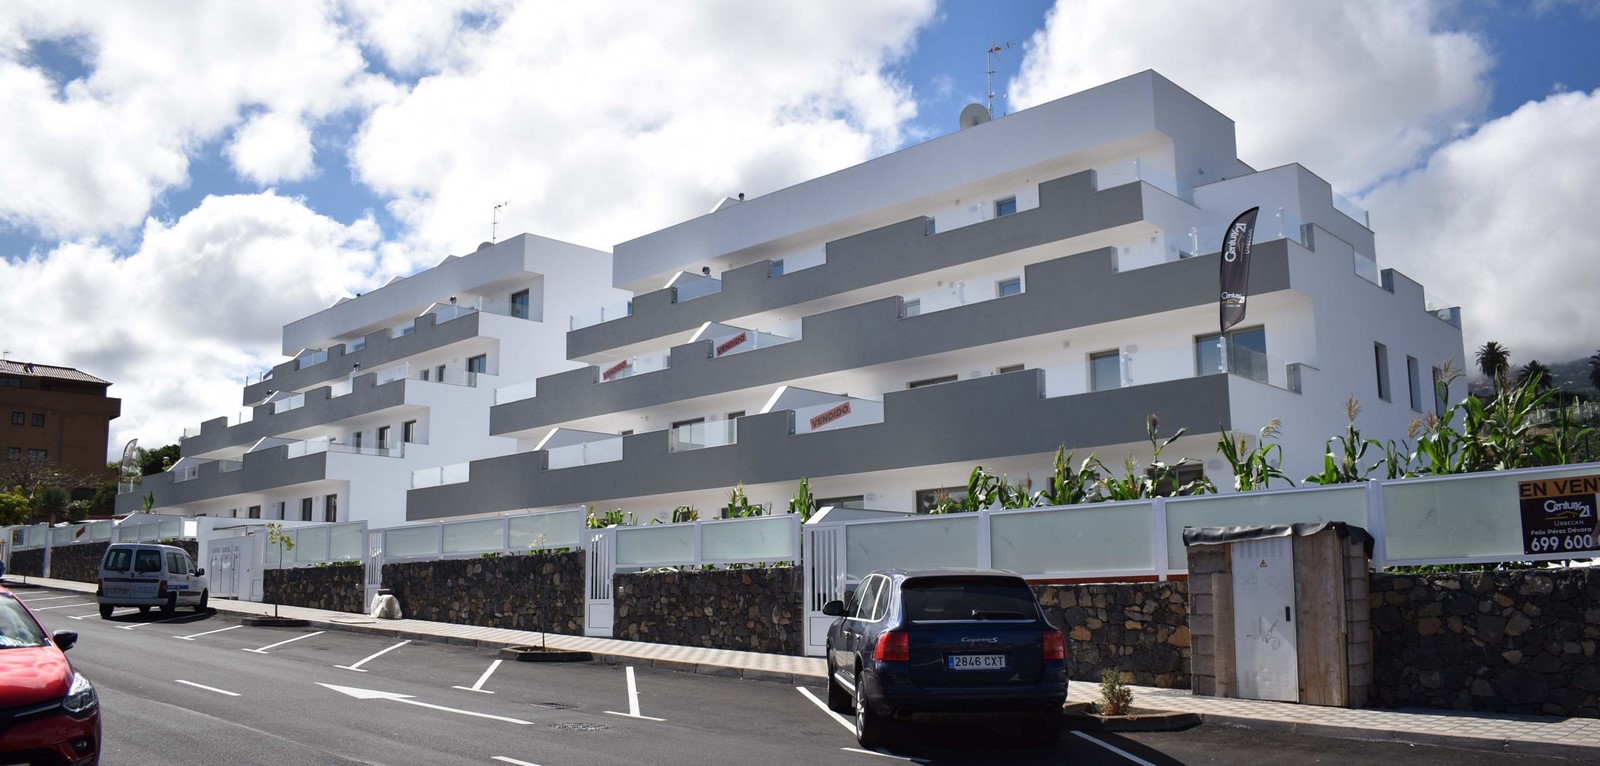 Architects in Santa Cruz de Tenerife - Top 30 Architects in Santa Cruz de Tenerife - Sheet15